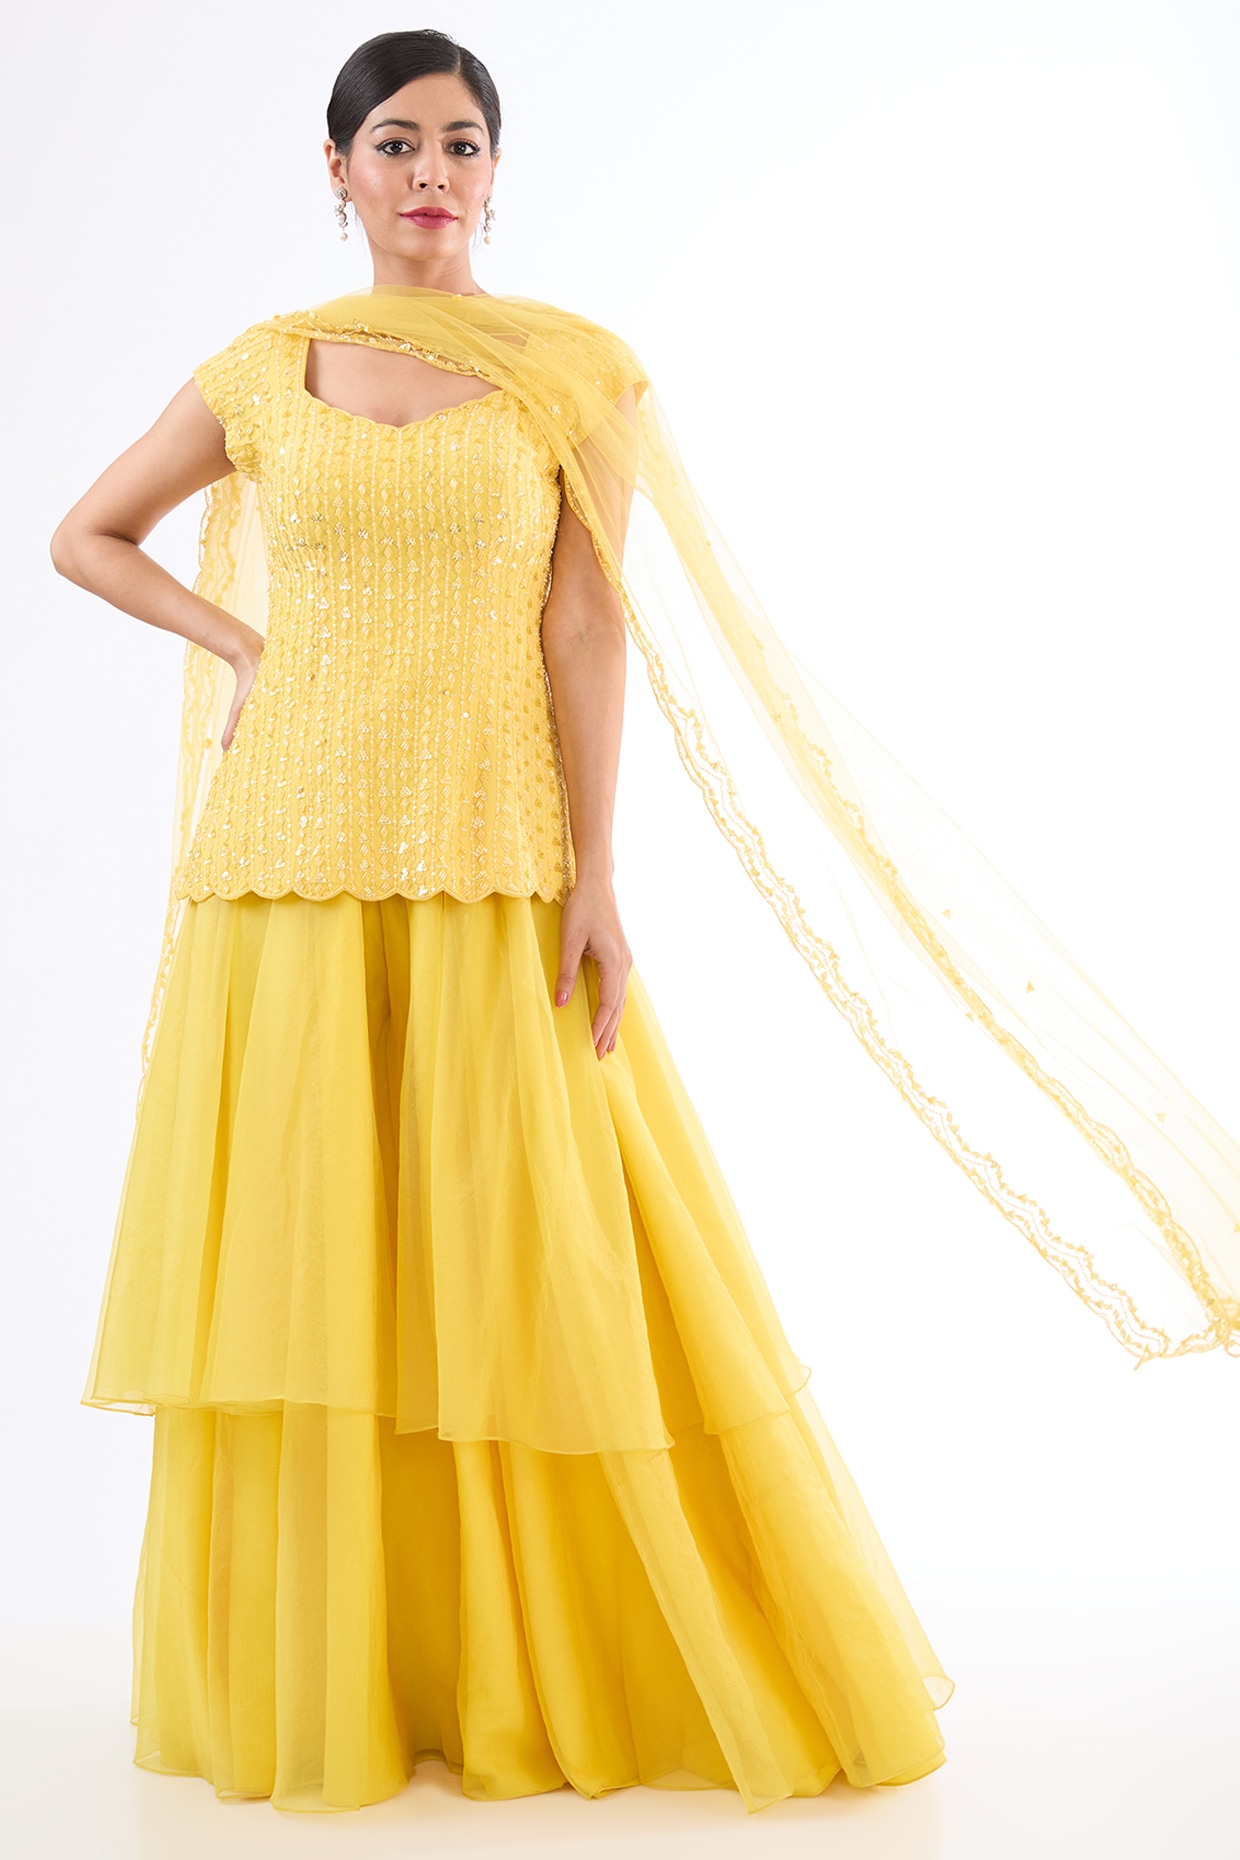 Hina Khan in Kalki Apricot Orange Short Kurta Suit In Cotton Silk With  Flared Palazzo Pants | Dress indian style, Sarara dress, Saree dress